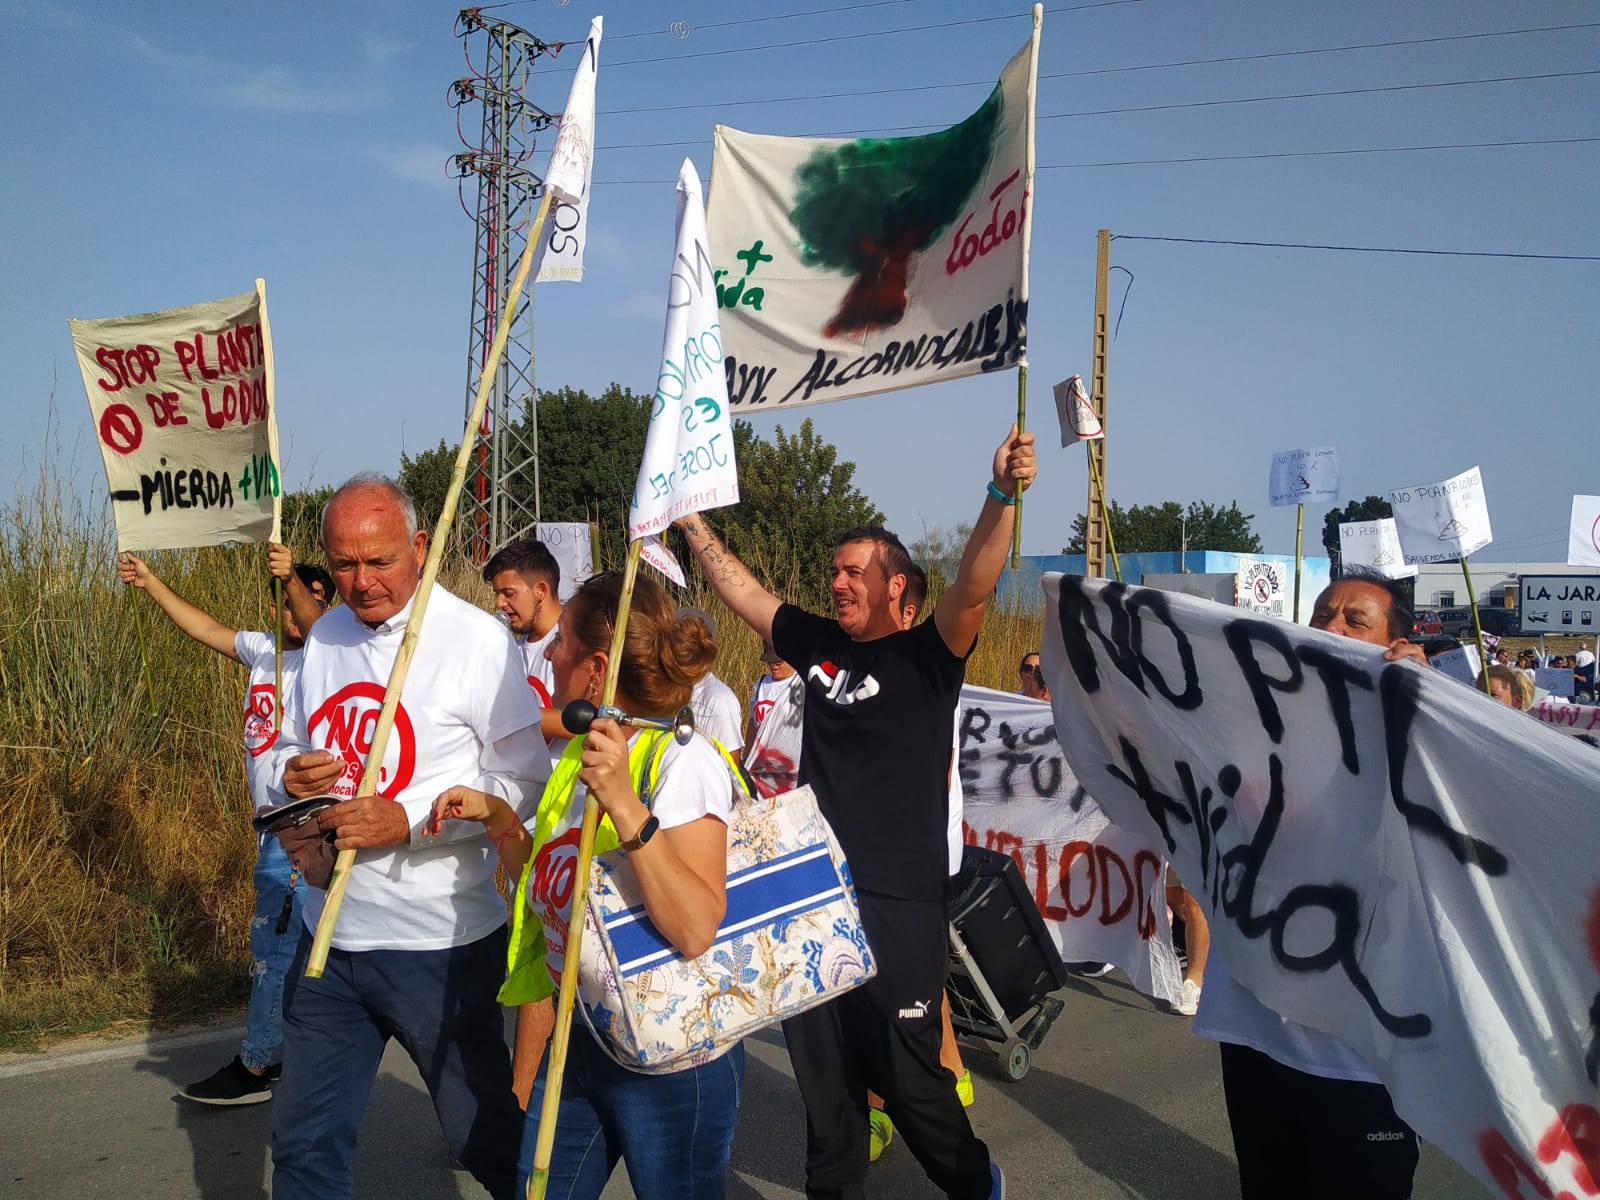 En una manifestación contra esta planta en San José del Valle, participó el ecopacifista Paco Casero. PLATAFORMA NO  LODOS